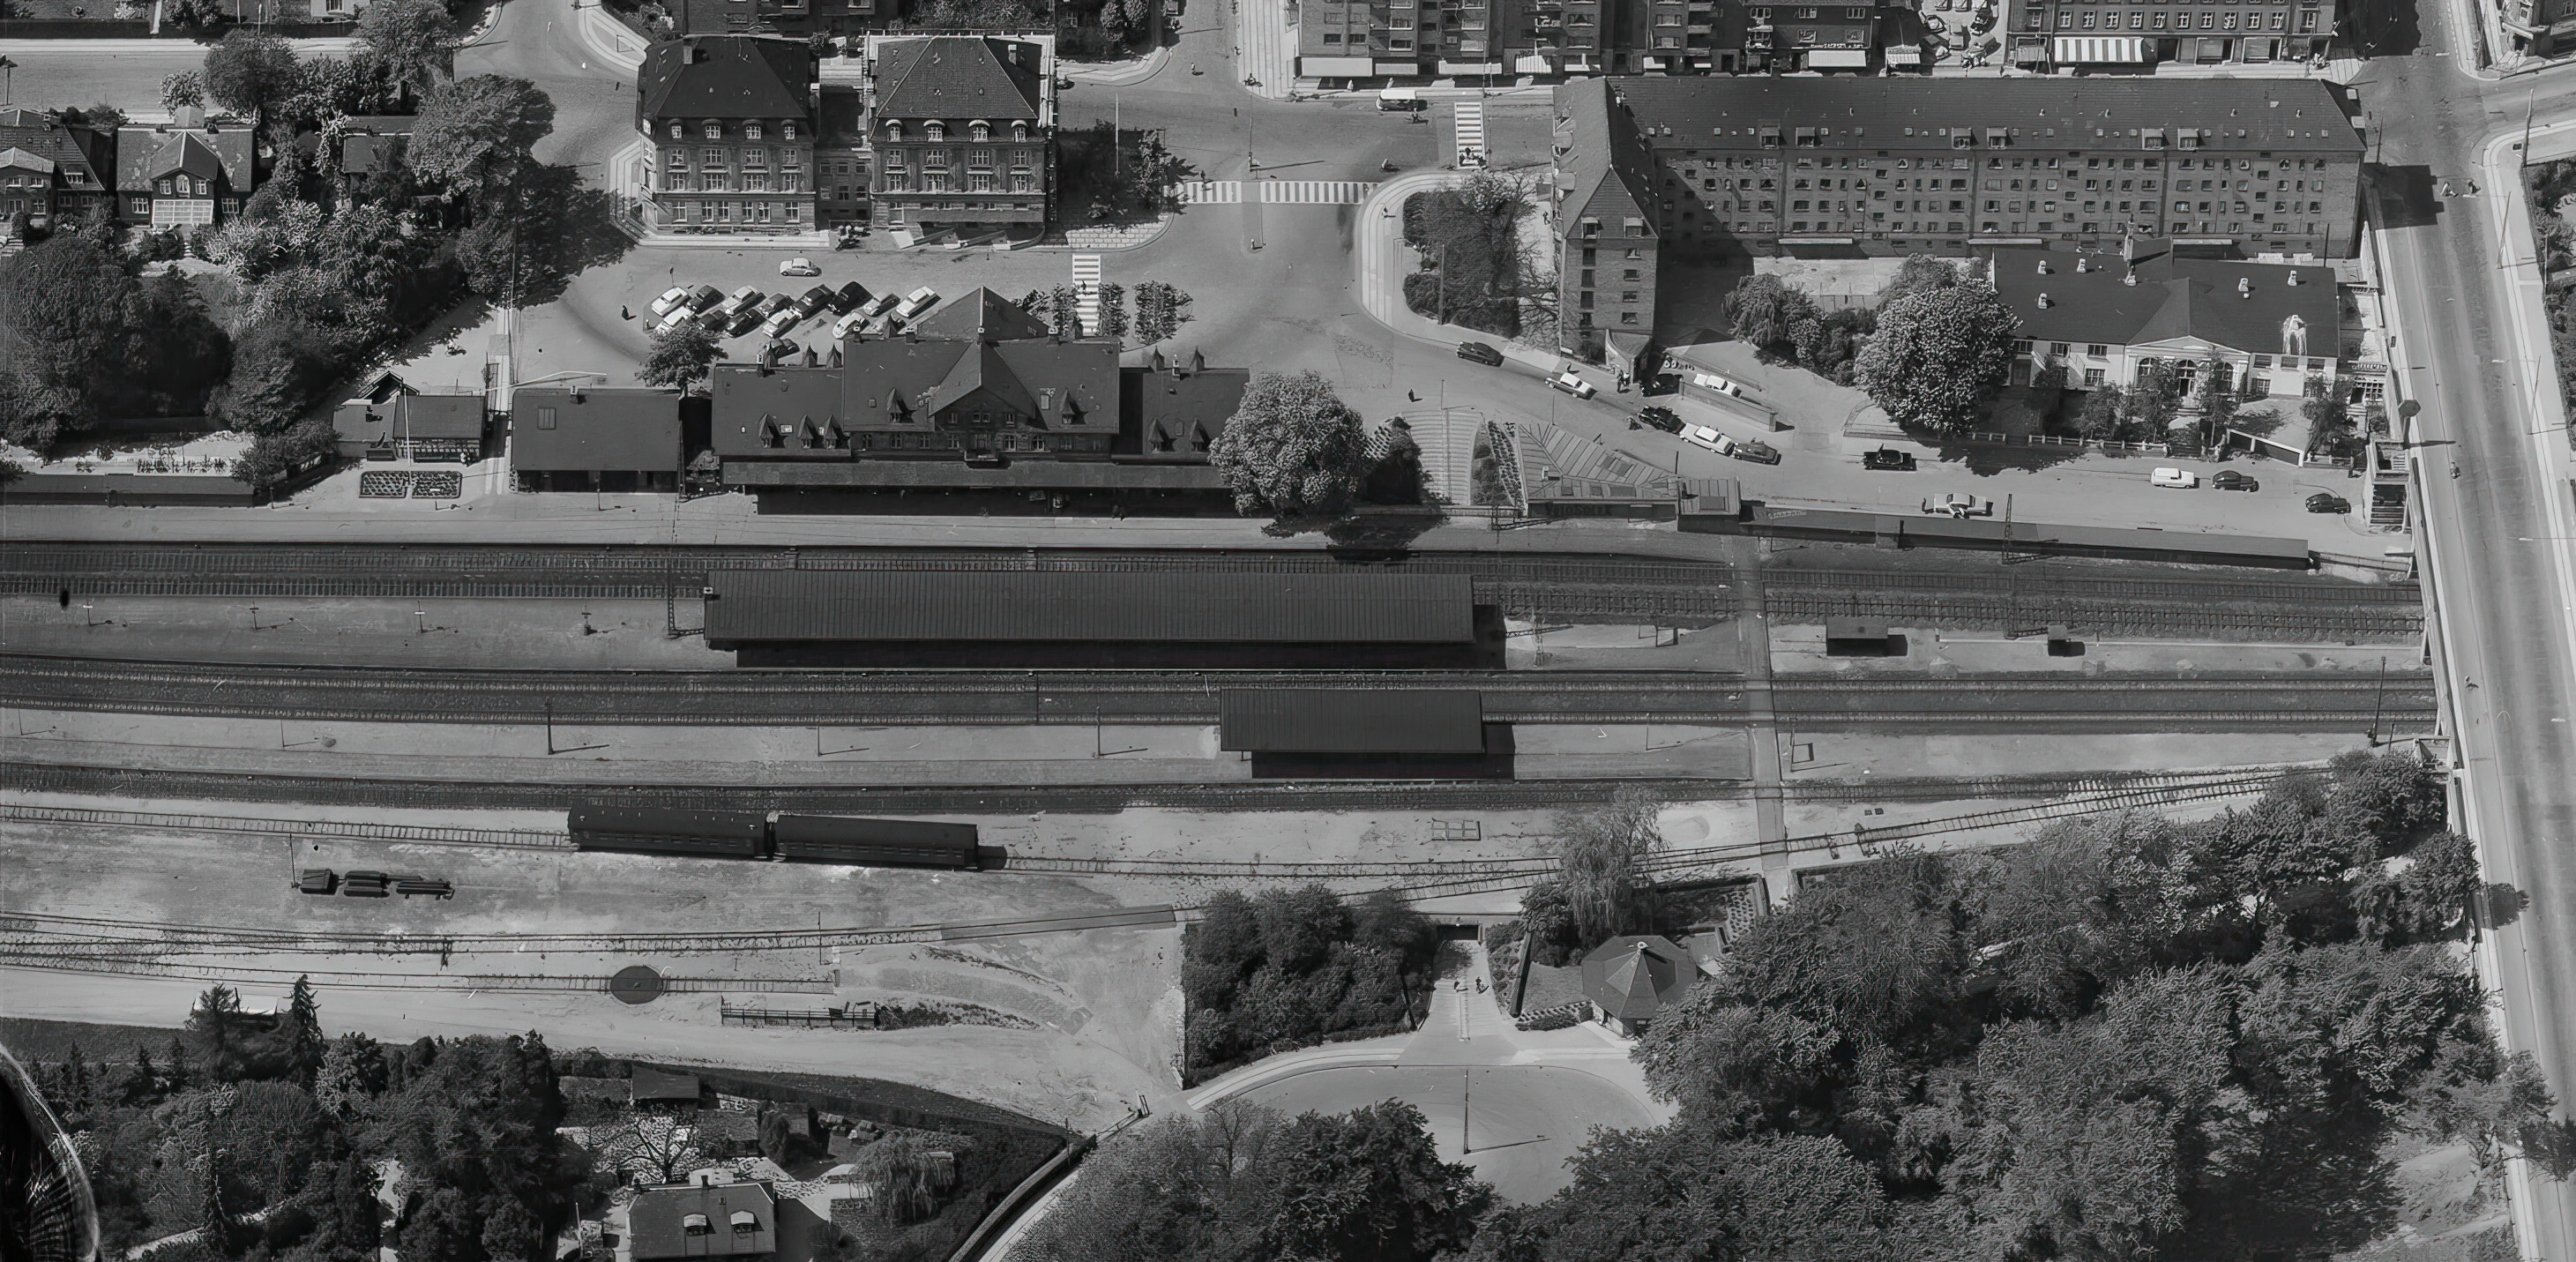 Billede af Charlottenlund Øst Billetsalgssted, som ligger nederst til højre for midten af billedet - skråt over for Charlottenlund Station.